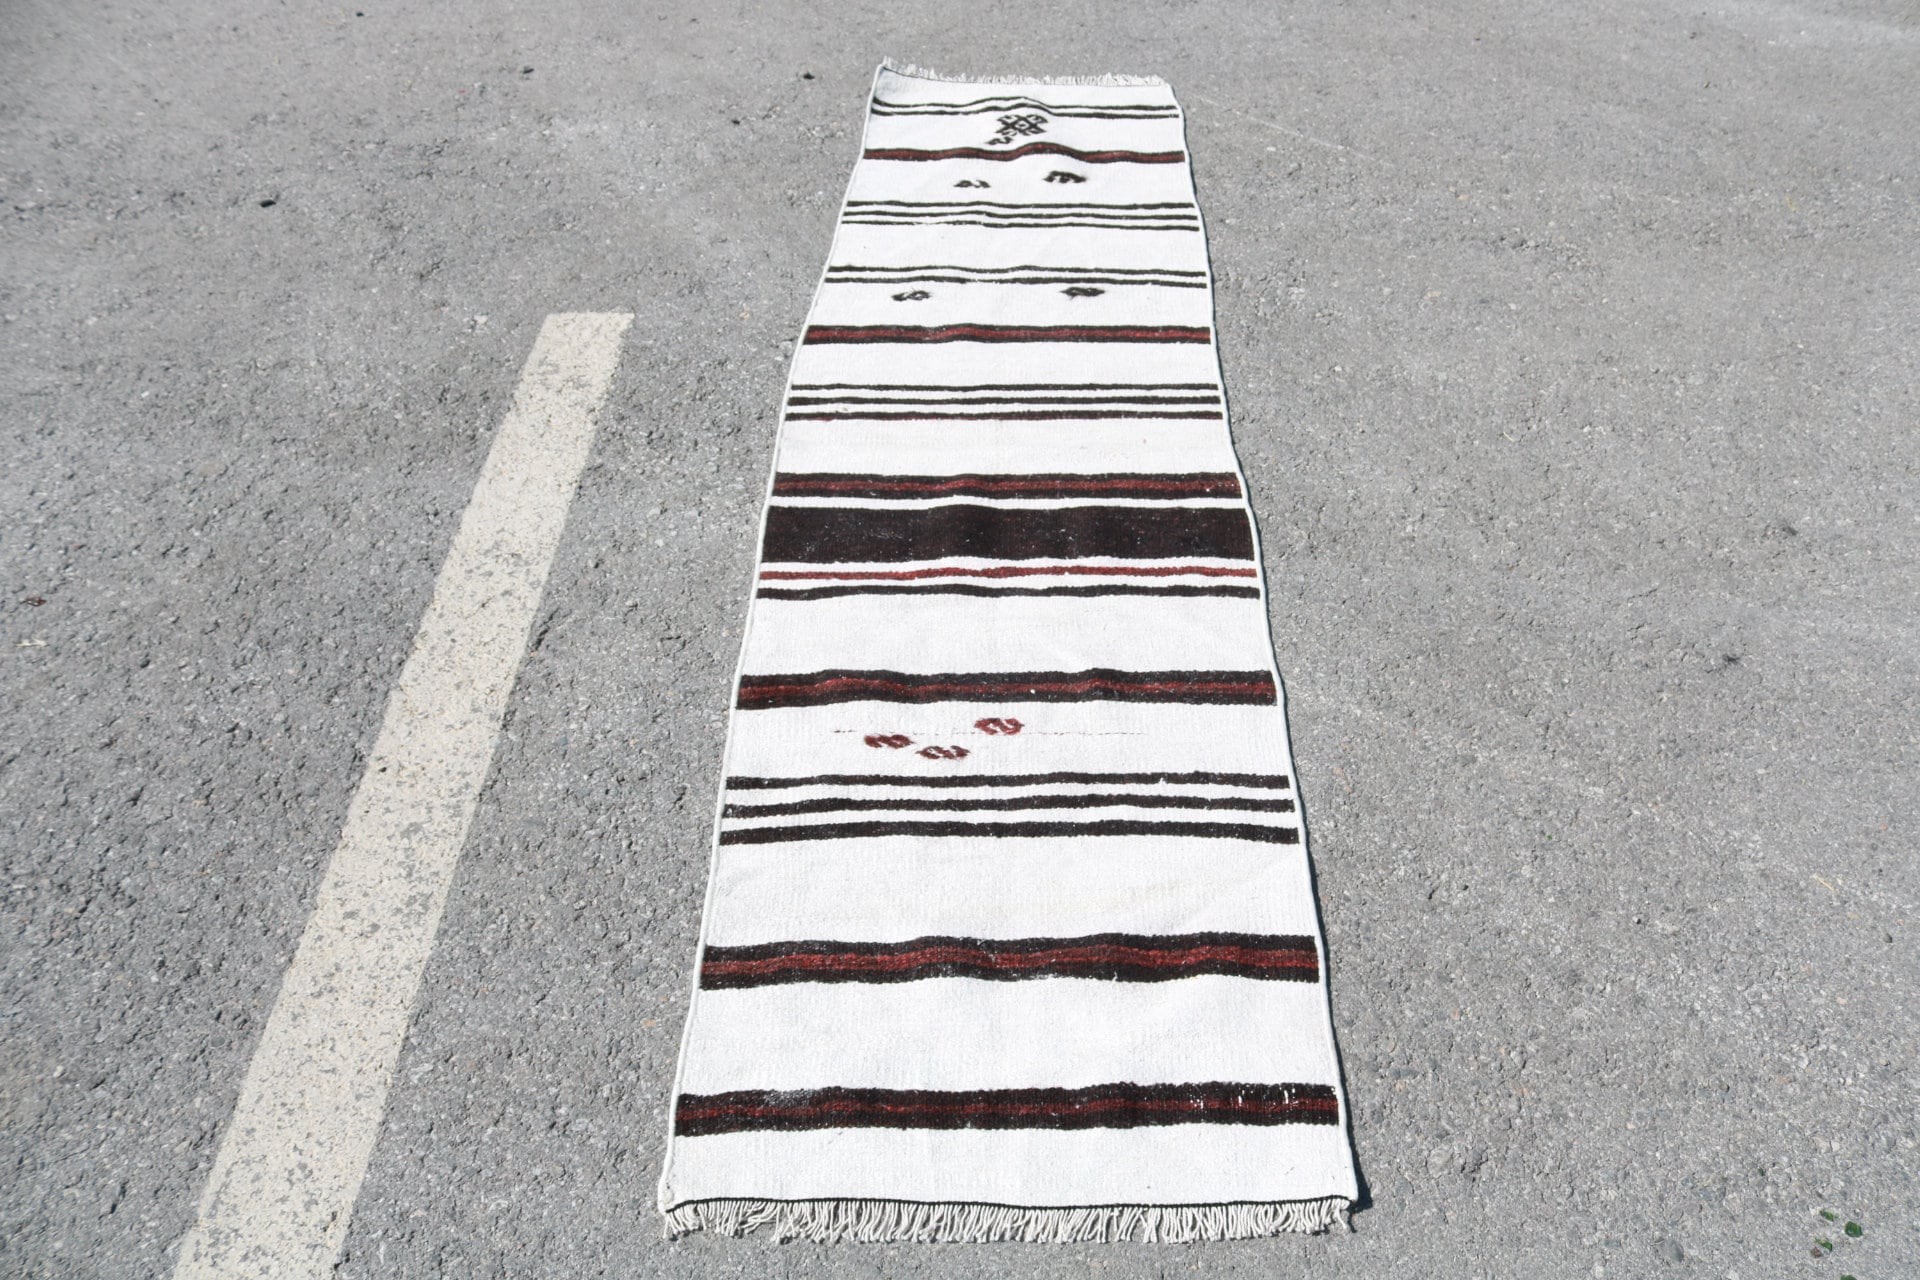 Kilim, Handwoven Rugs, Stair Rug, Vintage Rug, Cool Rug, Corridor Rug, Oriental Rugs, 2x7.1 ft Runner Rug, Rugs for Corridor, Turkish Rugs